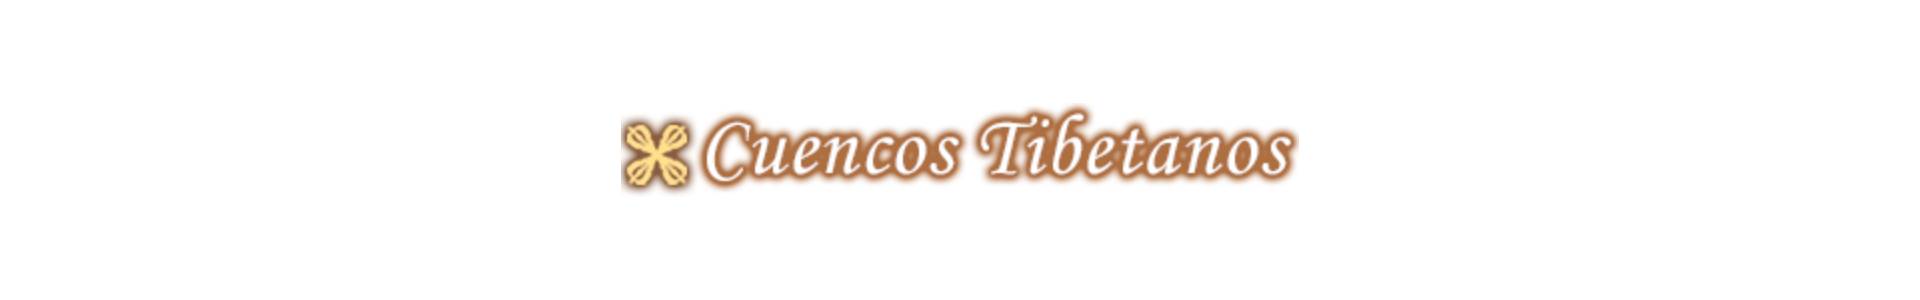 cursos cuencos tibetanos barcelona